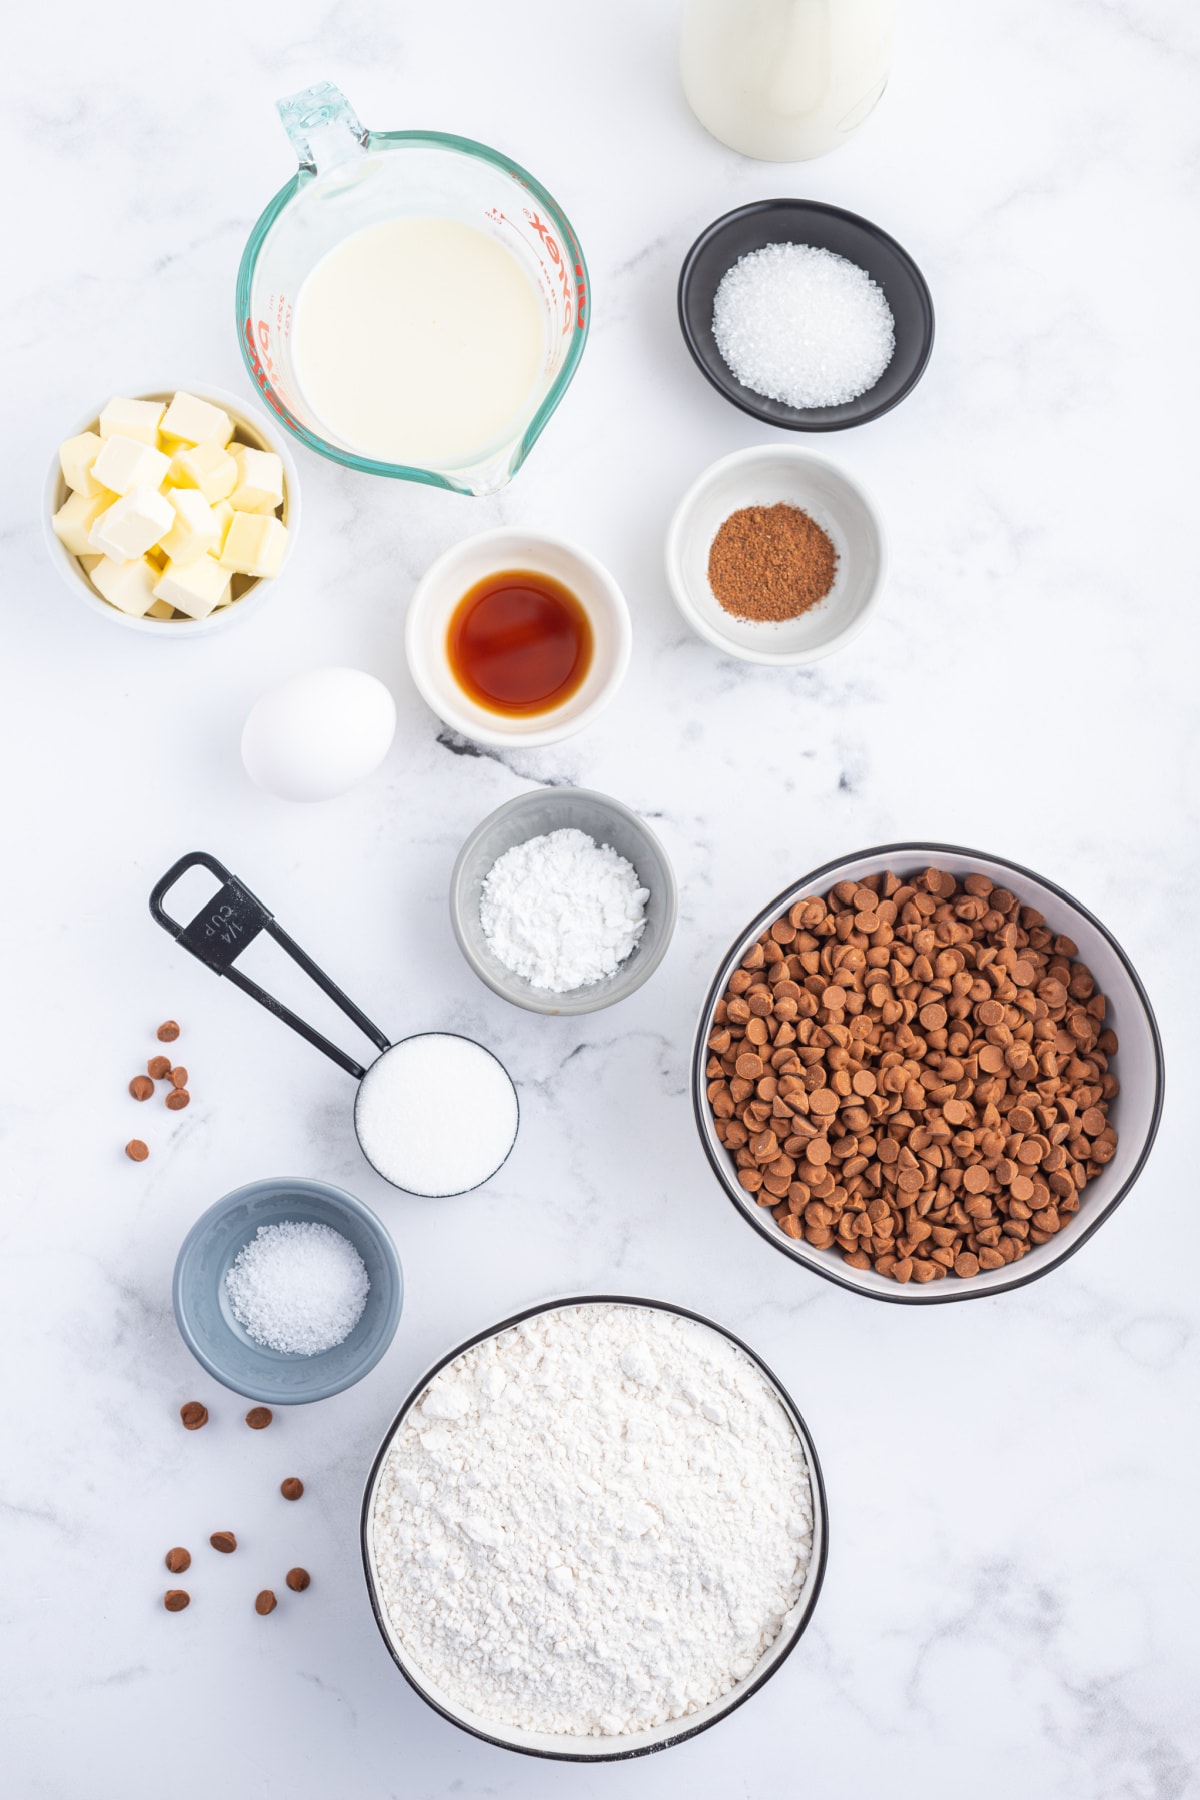 ingredients displayed for making cinnamon eggnog scones